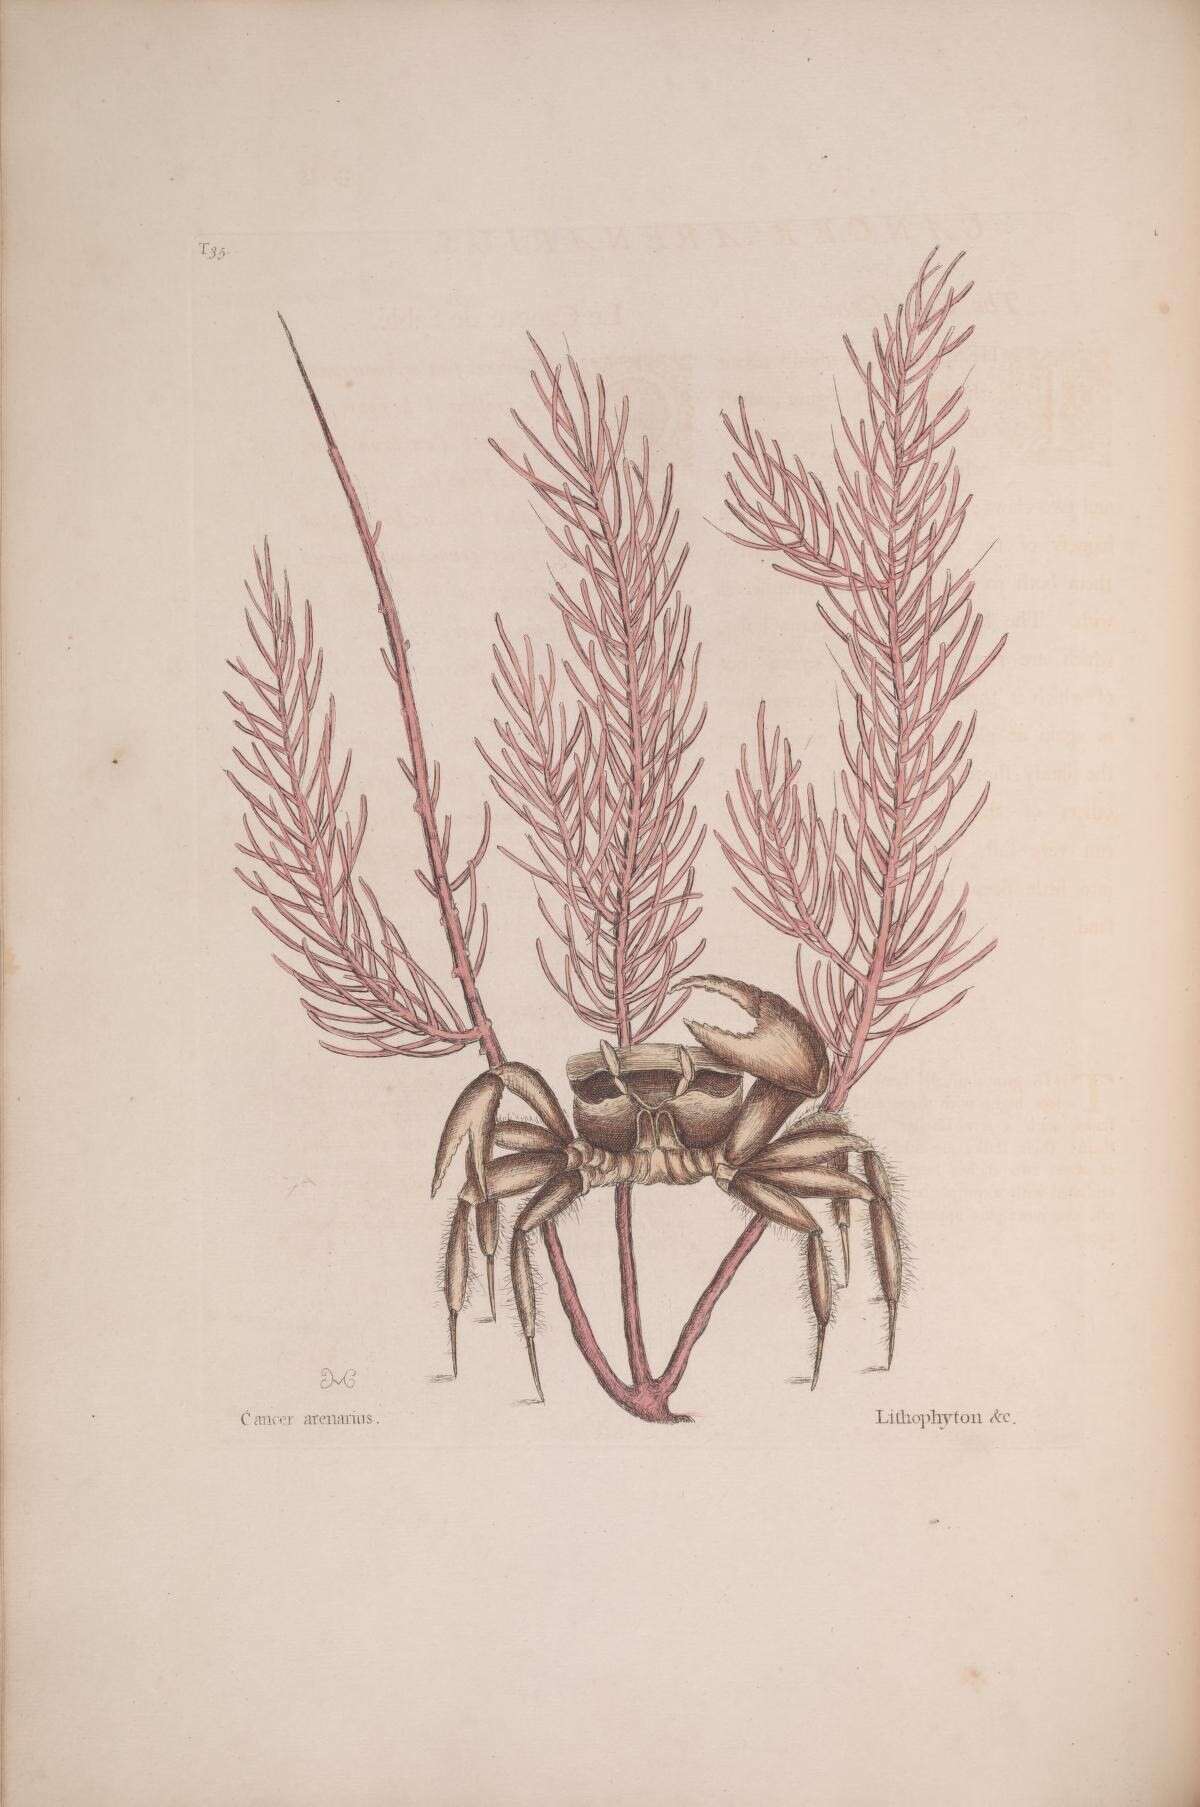 Image de Antillogorgia acerosa (Pallas 1766)